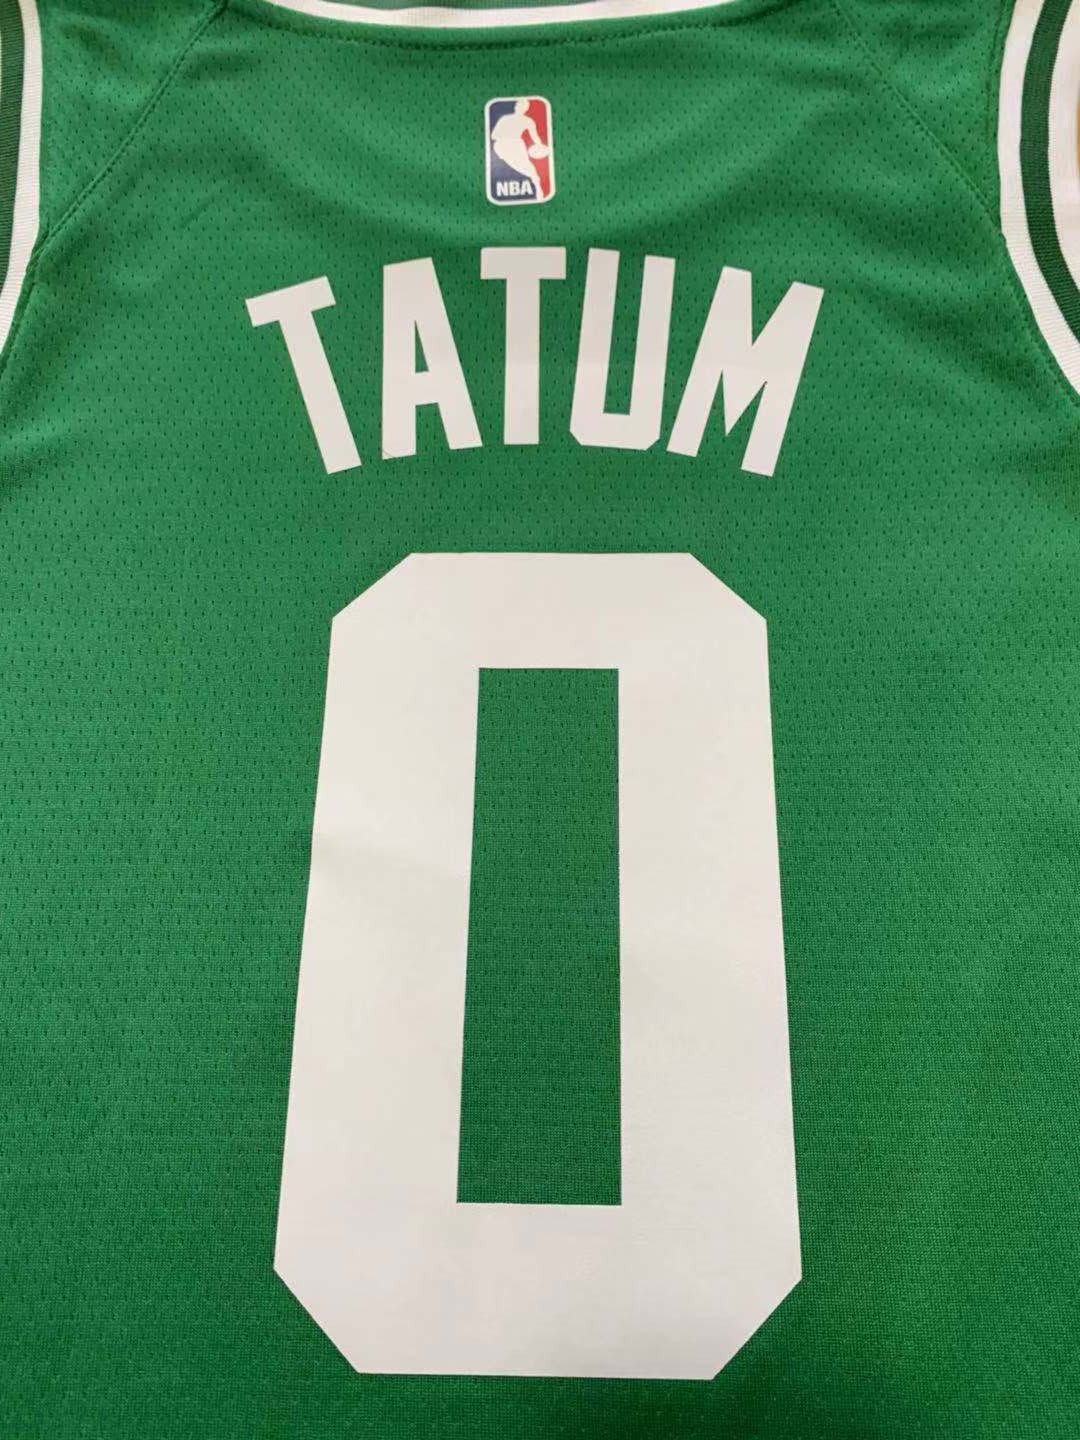 bestsoccerstore | Men's Boston Celtics Jayson Tatum #0 Swingman Jersey ...